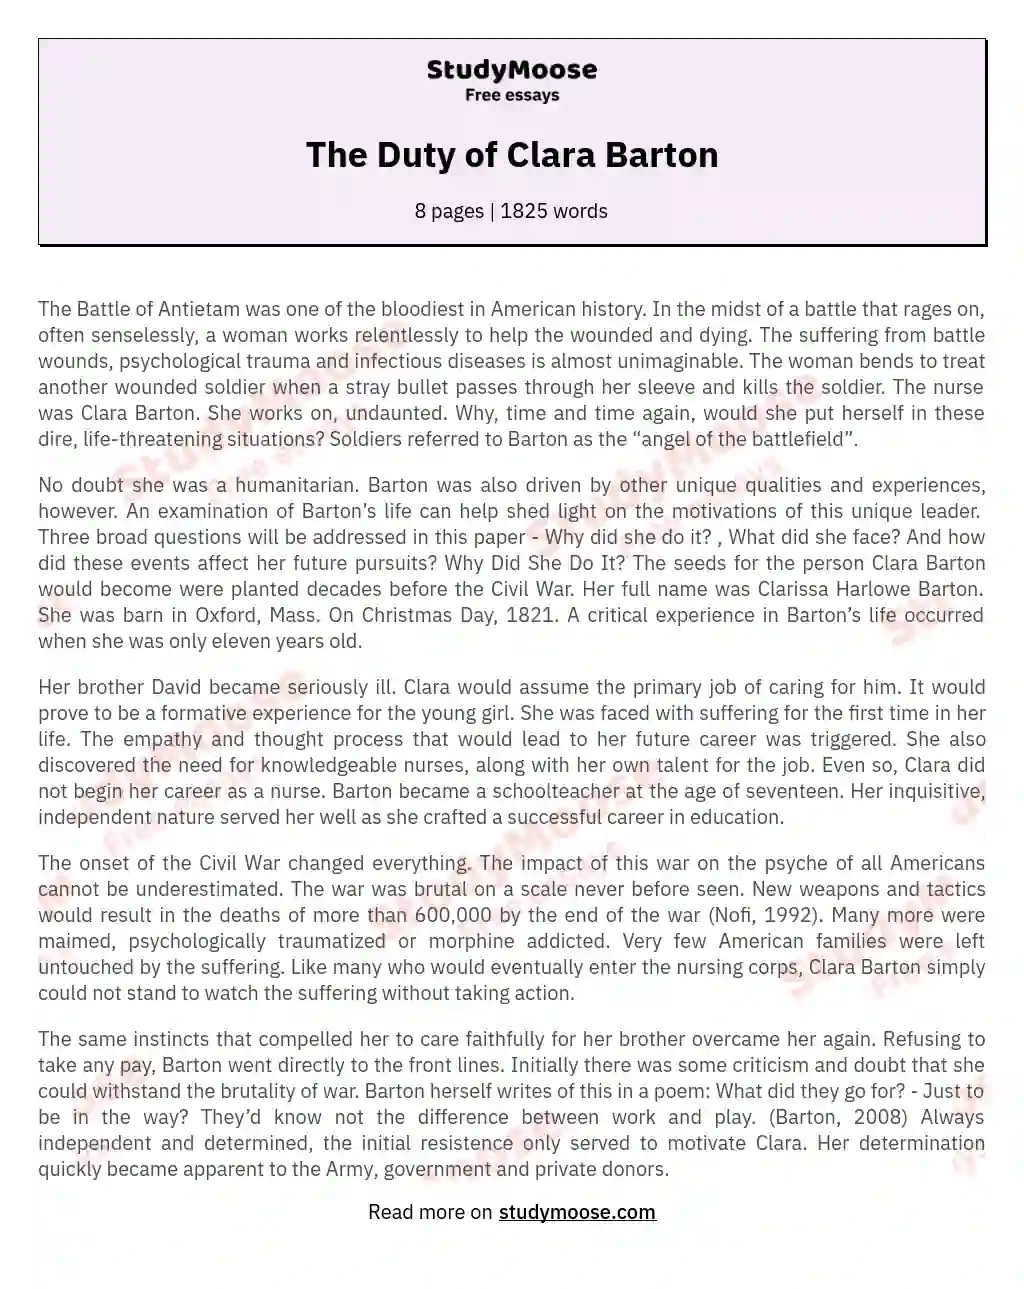 The Duty of Clara Barton essay